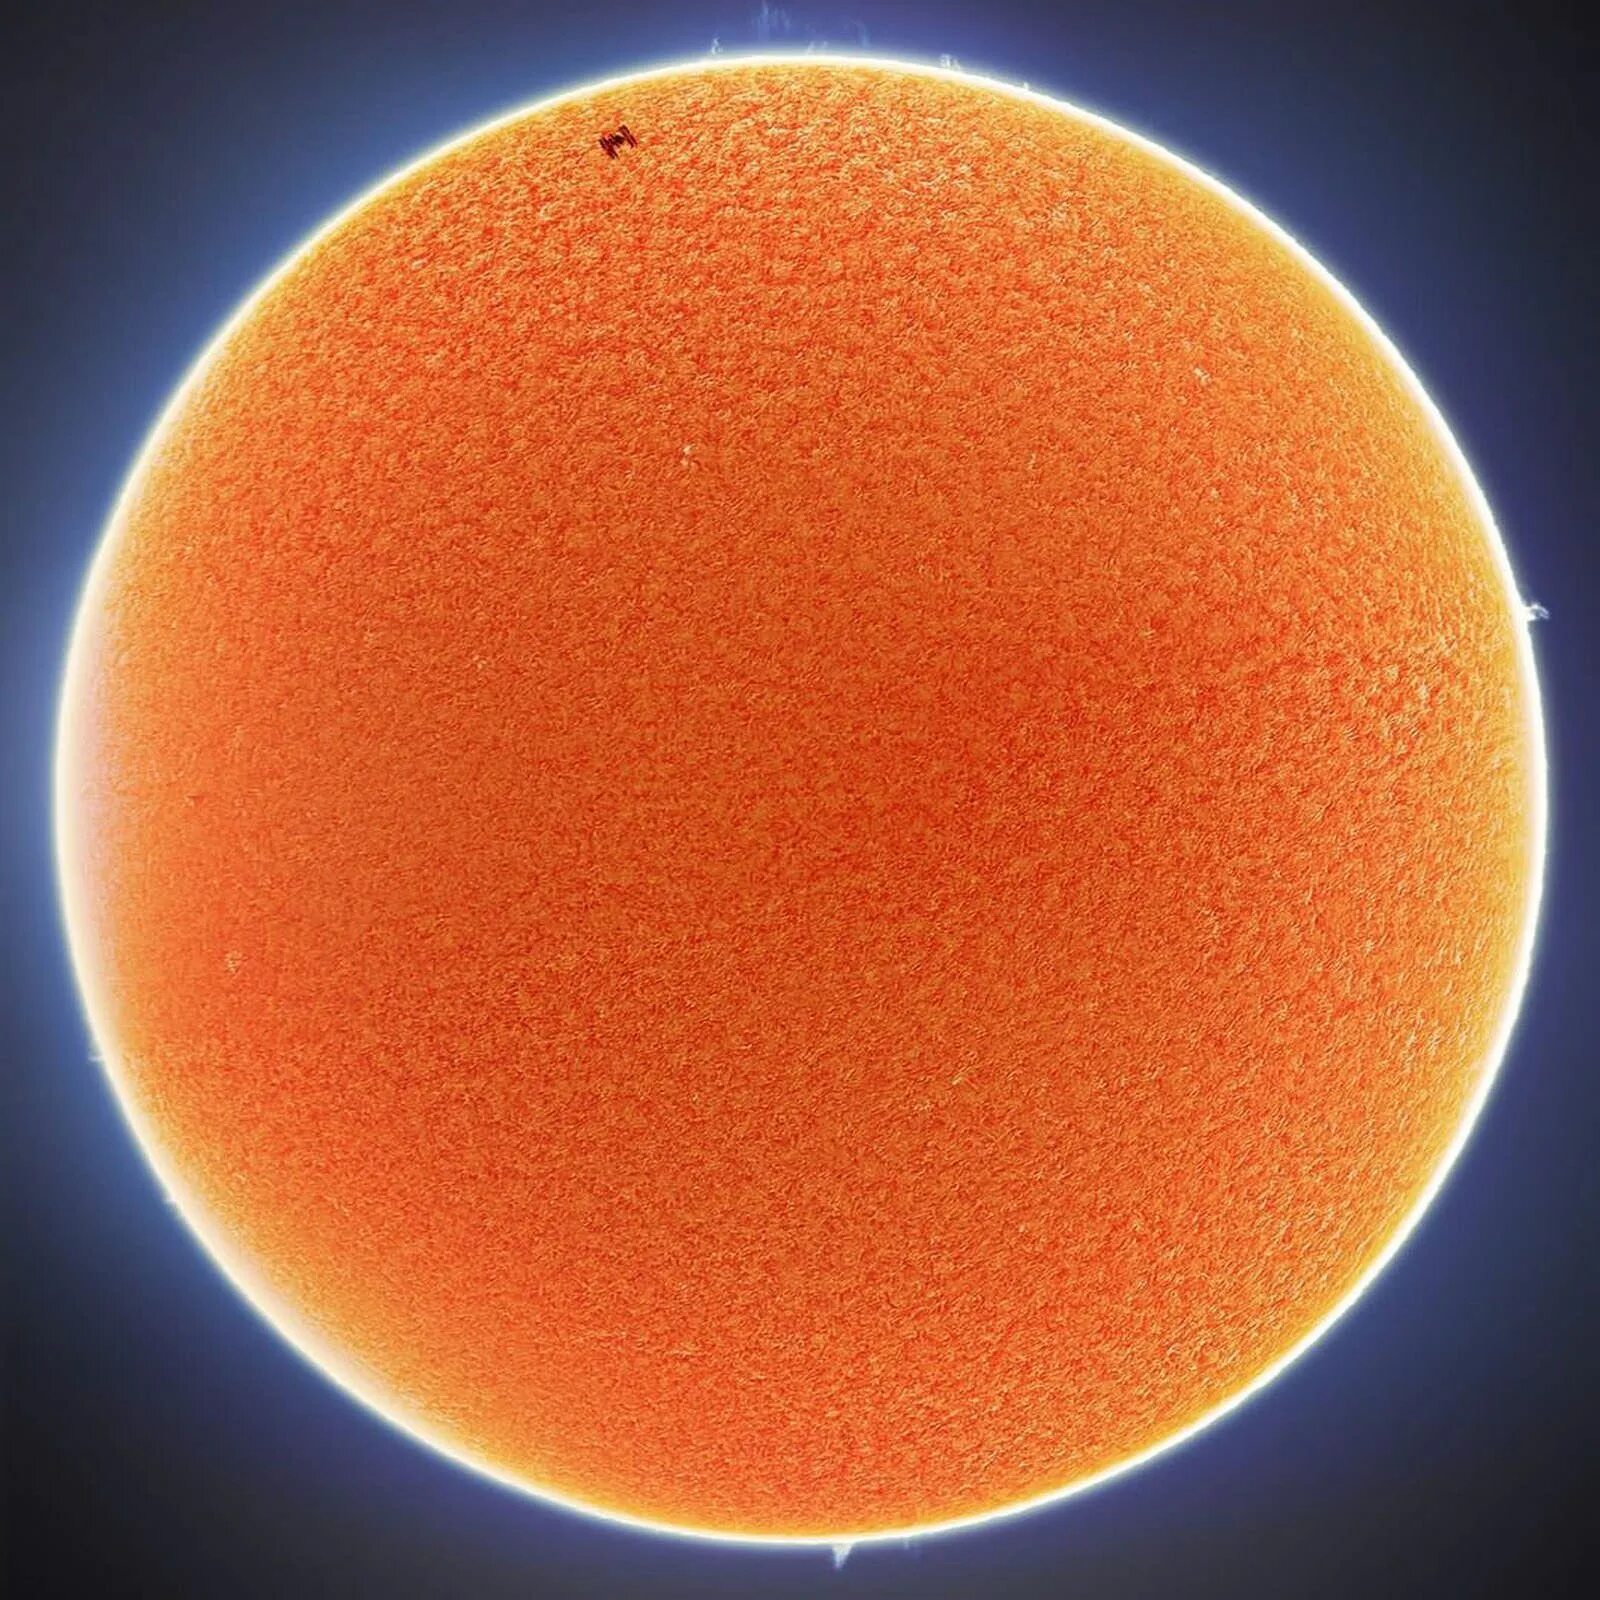 Эндрю Маккарти фото солнца. Солнце круг. Солнце фото. МКС на фоне солнца. Транзит луна солнце